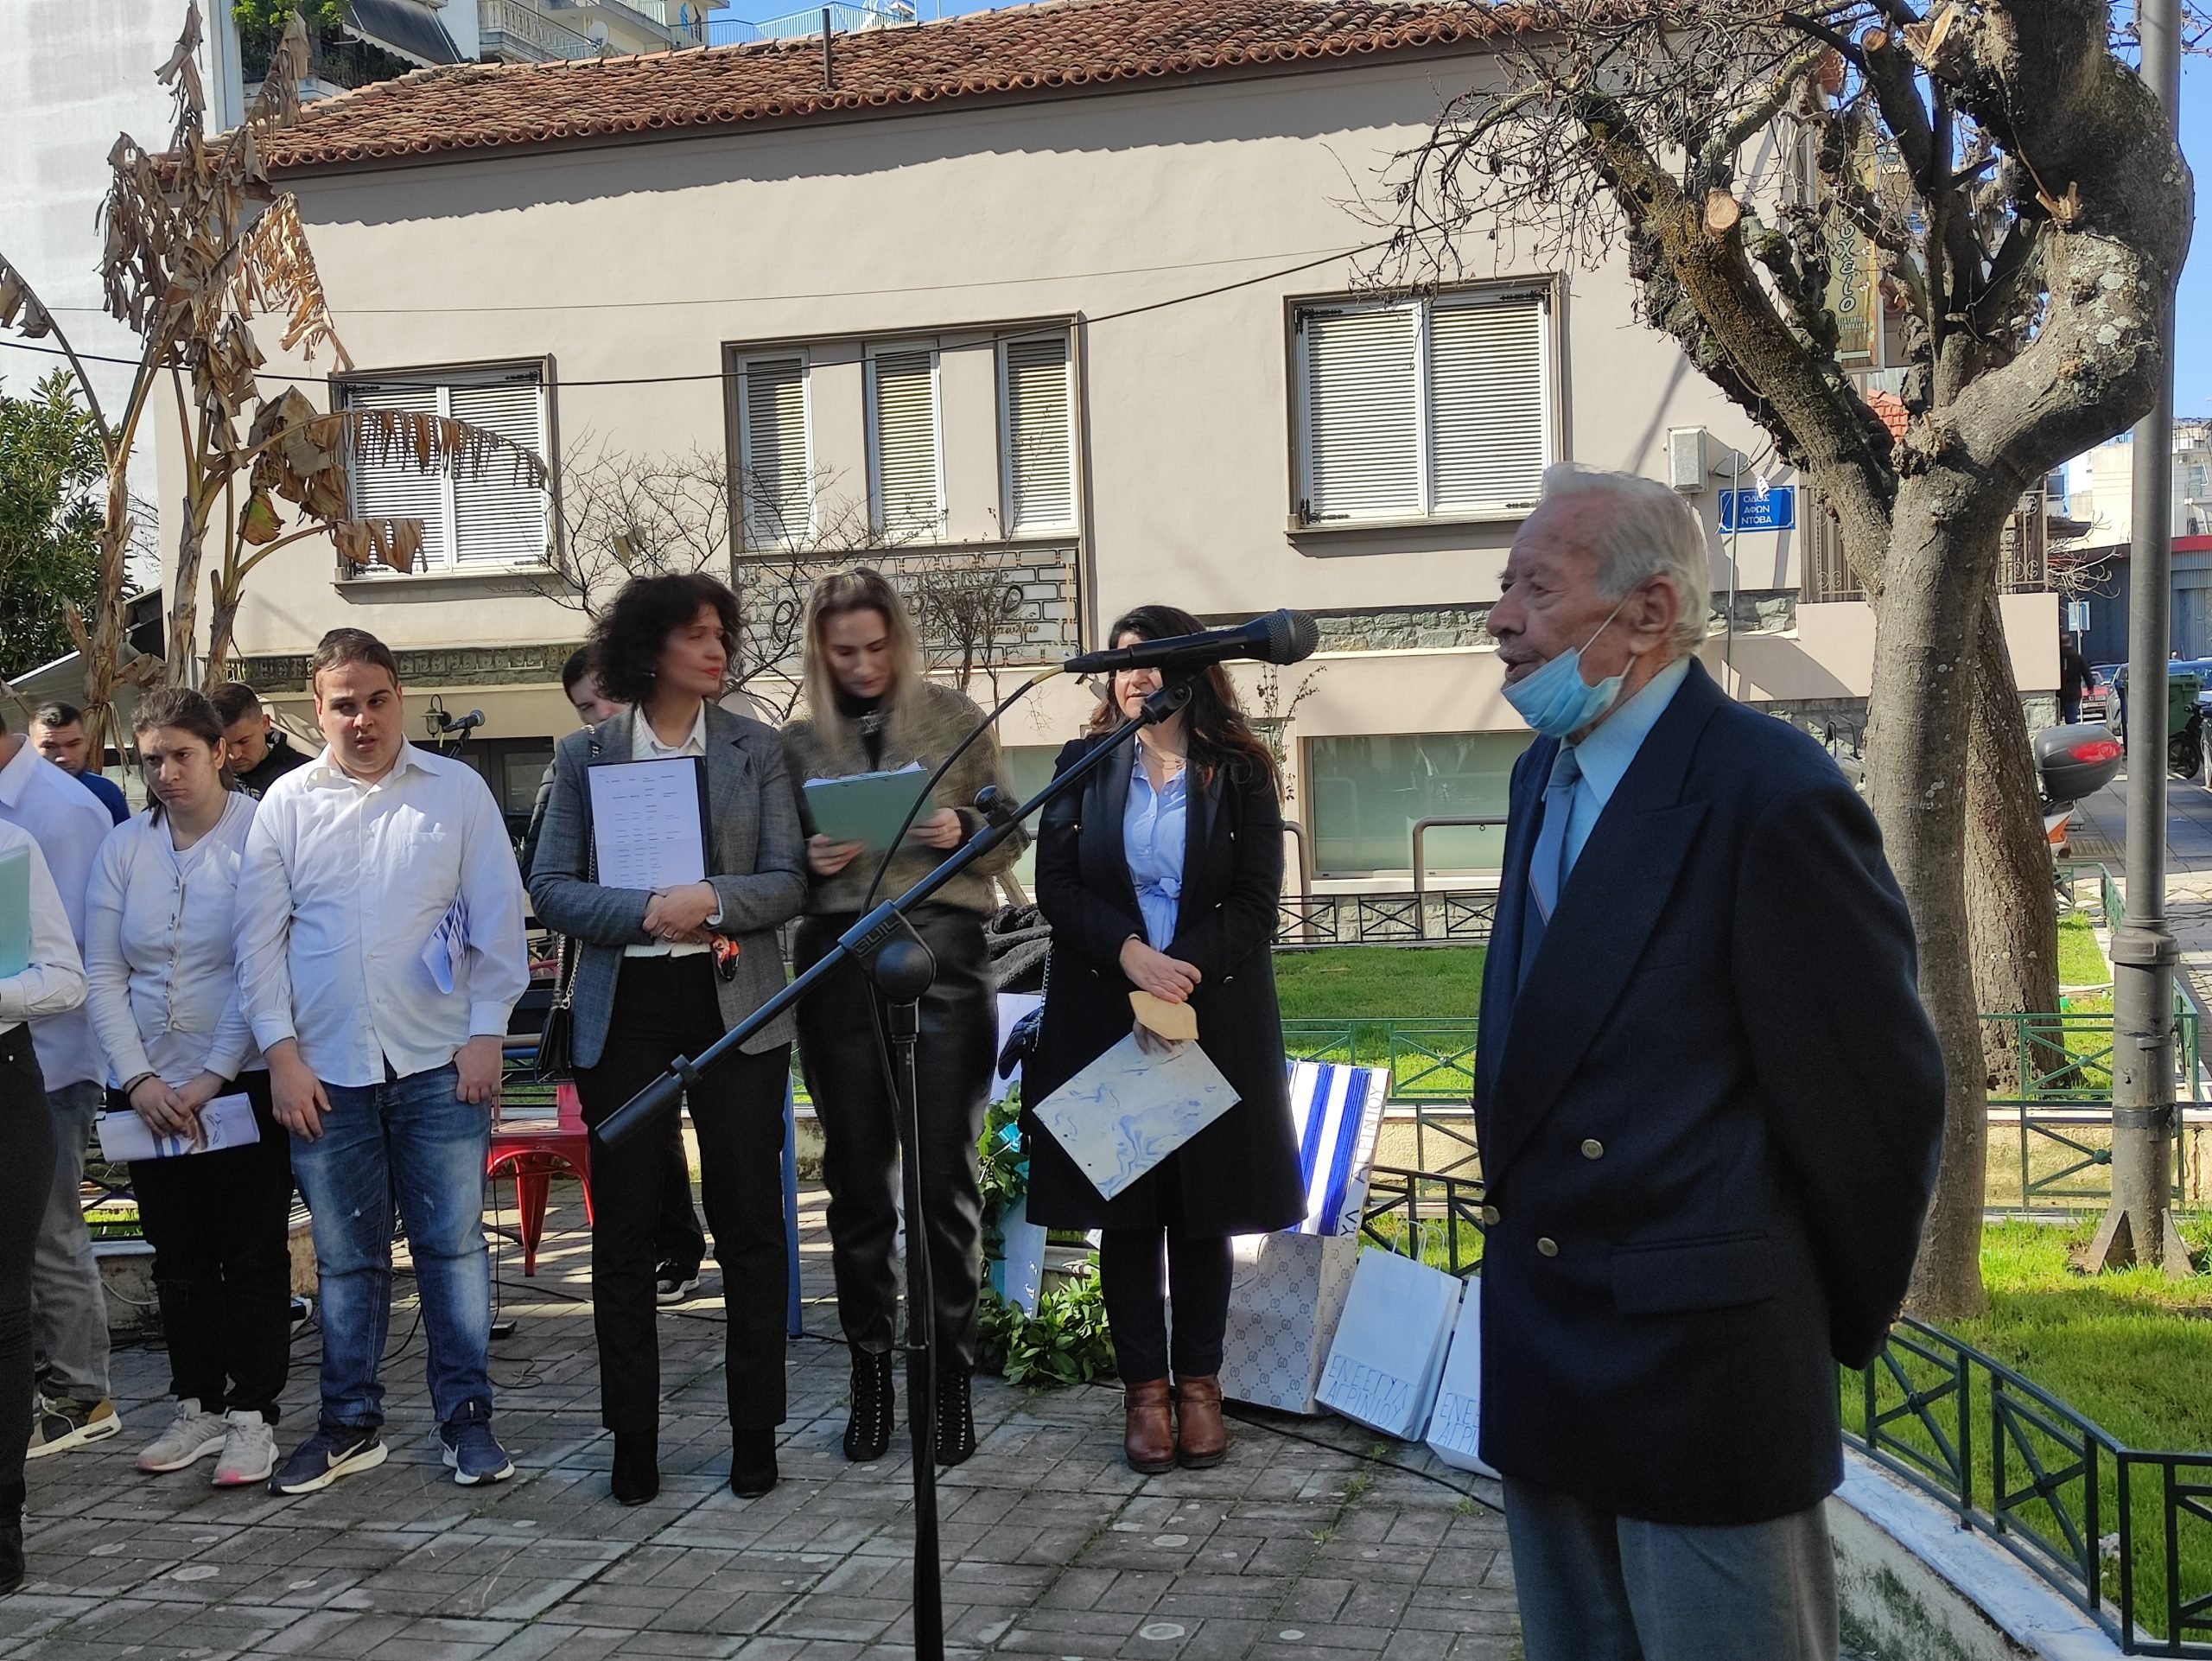 Εκδήλωση που προκάλεσε συγκίνηση στο Αγρίνιο- Σχολείο τίμησε τους Αιτωλοακαρνάνες ήρωες της Κύπρου